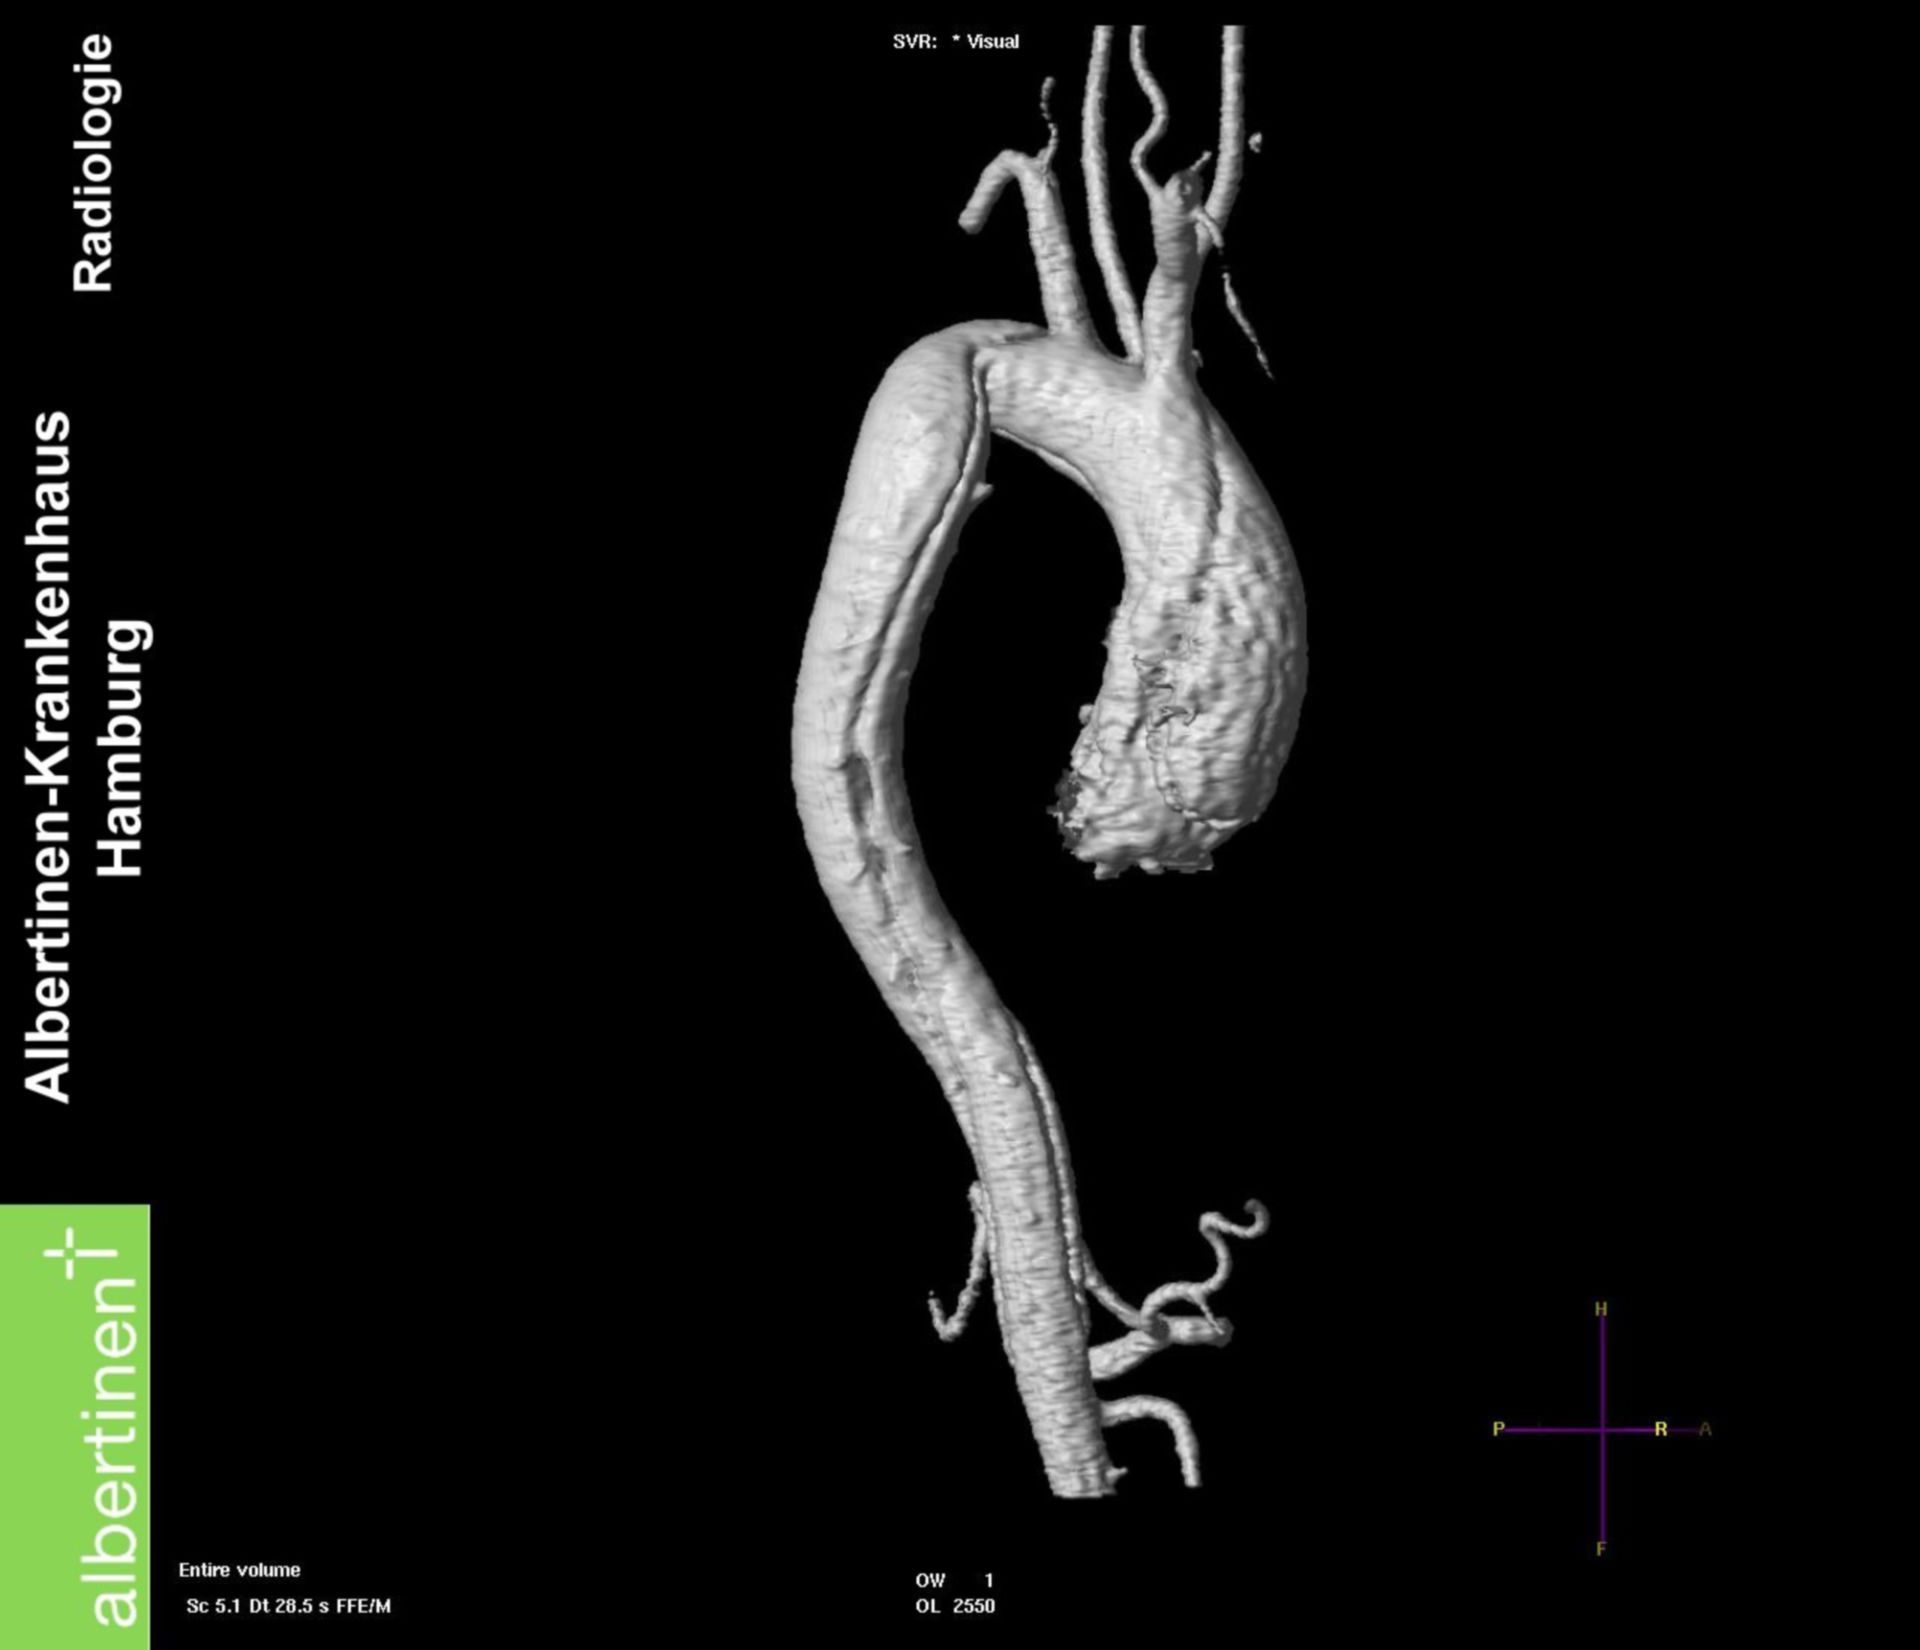 Tomografia a risonanza magnetica - dissecazione aortica